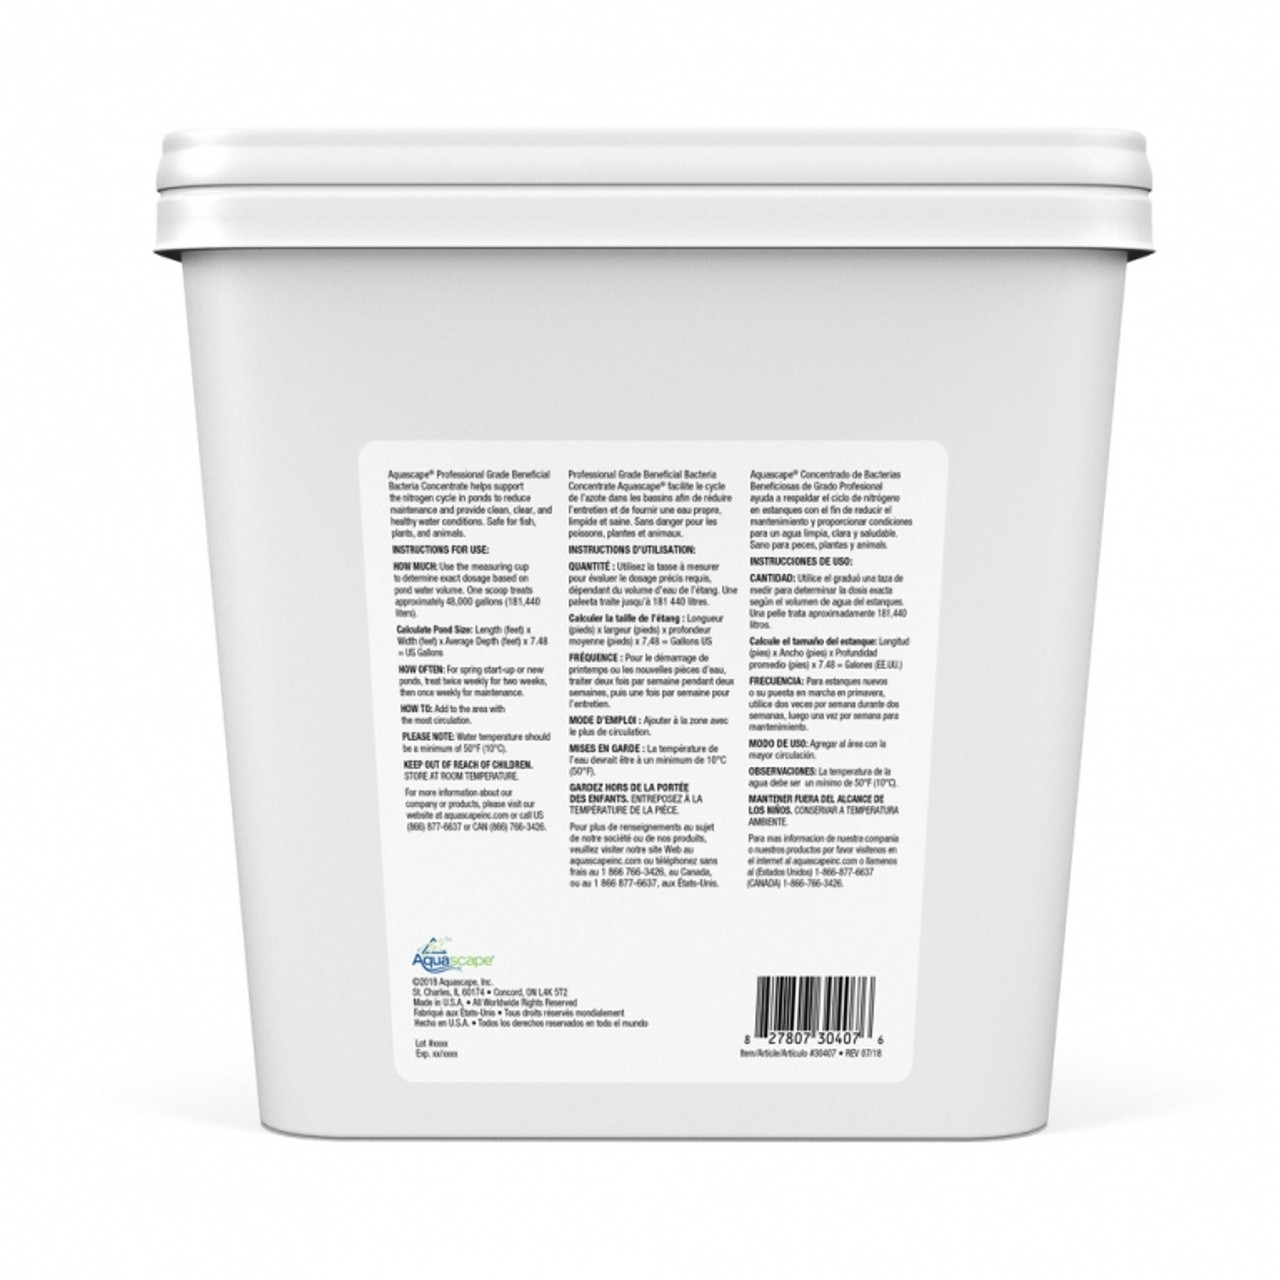 Aquascape Beneficial Bacteria Concentrate Professional Grade - 9 lbs.